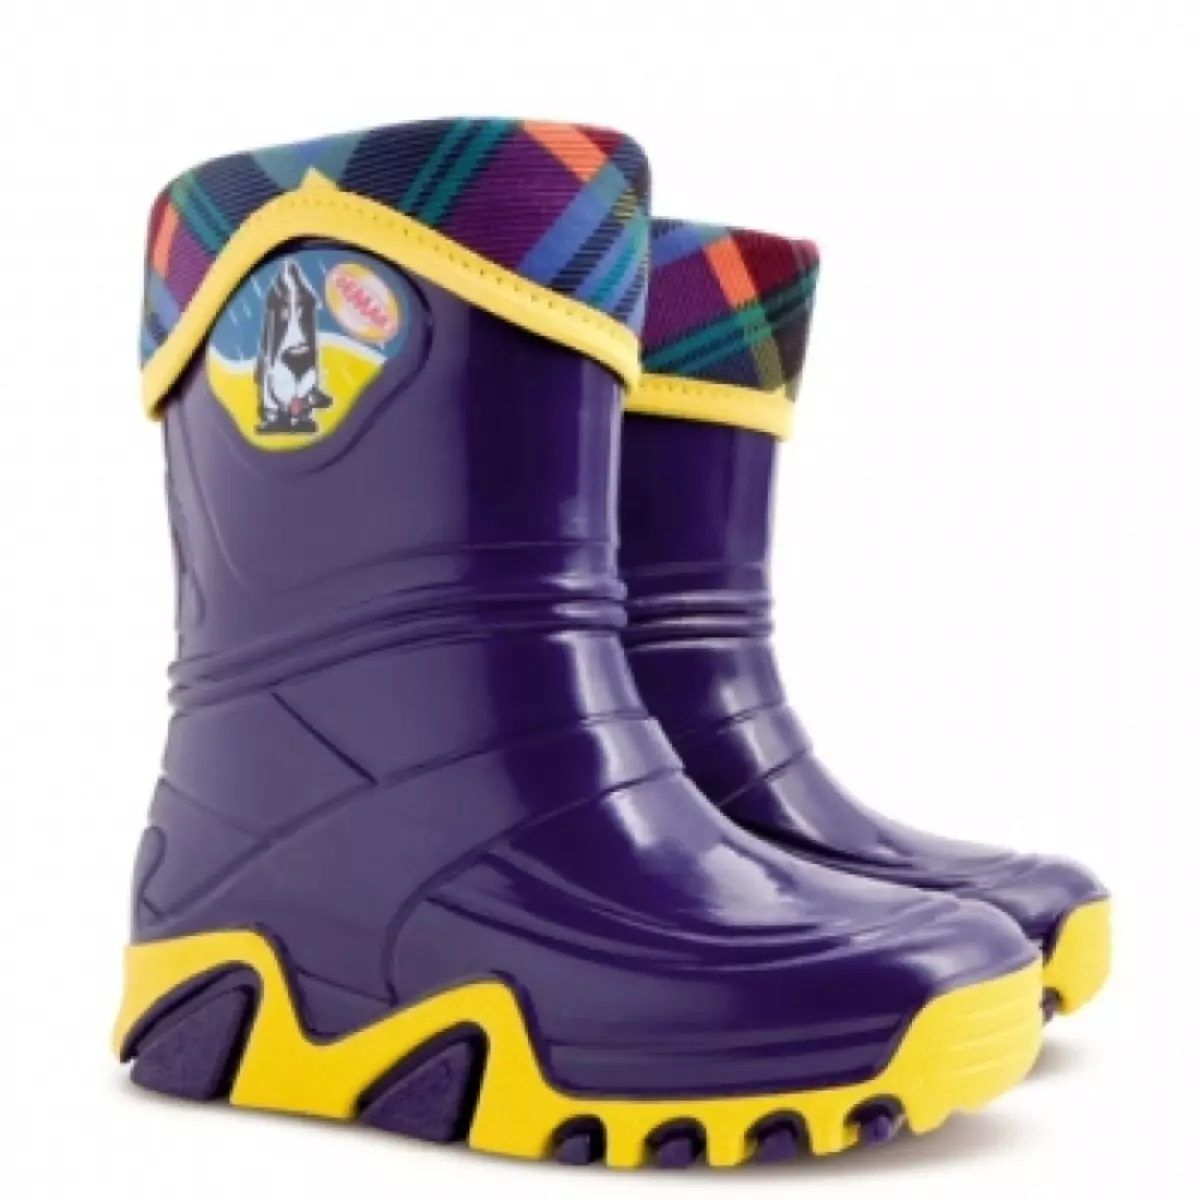 Lastik Boots Demar (67 Fotoğraf): Çocuk ayakkabısı, yalıtımlı modeller hakkında yorumlar 2236_10